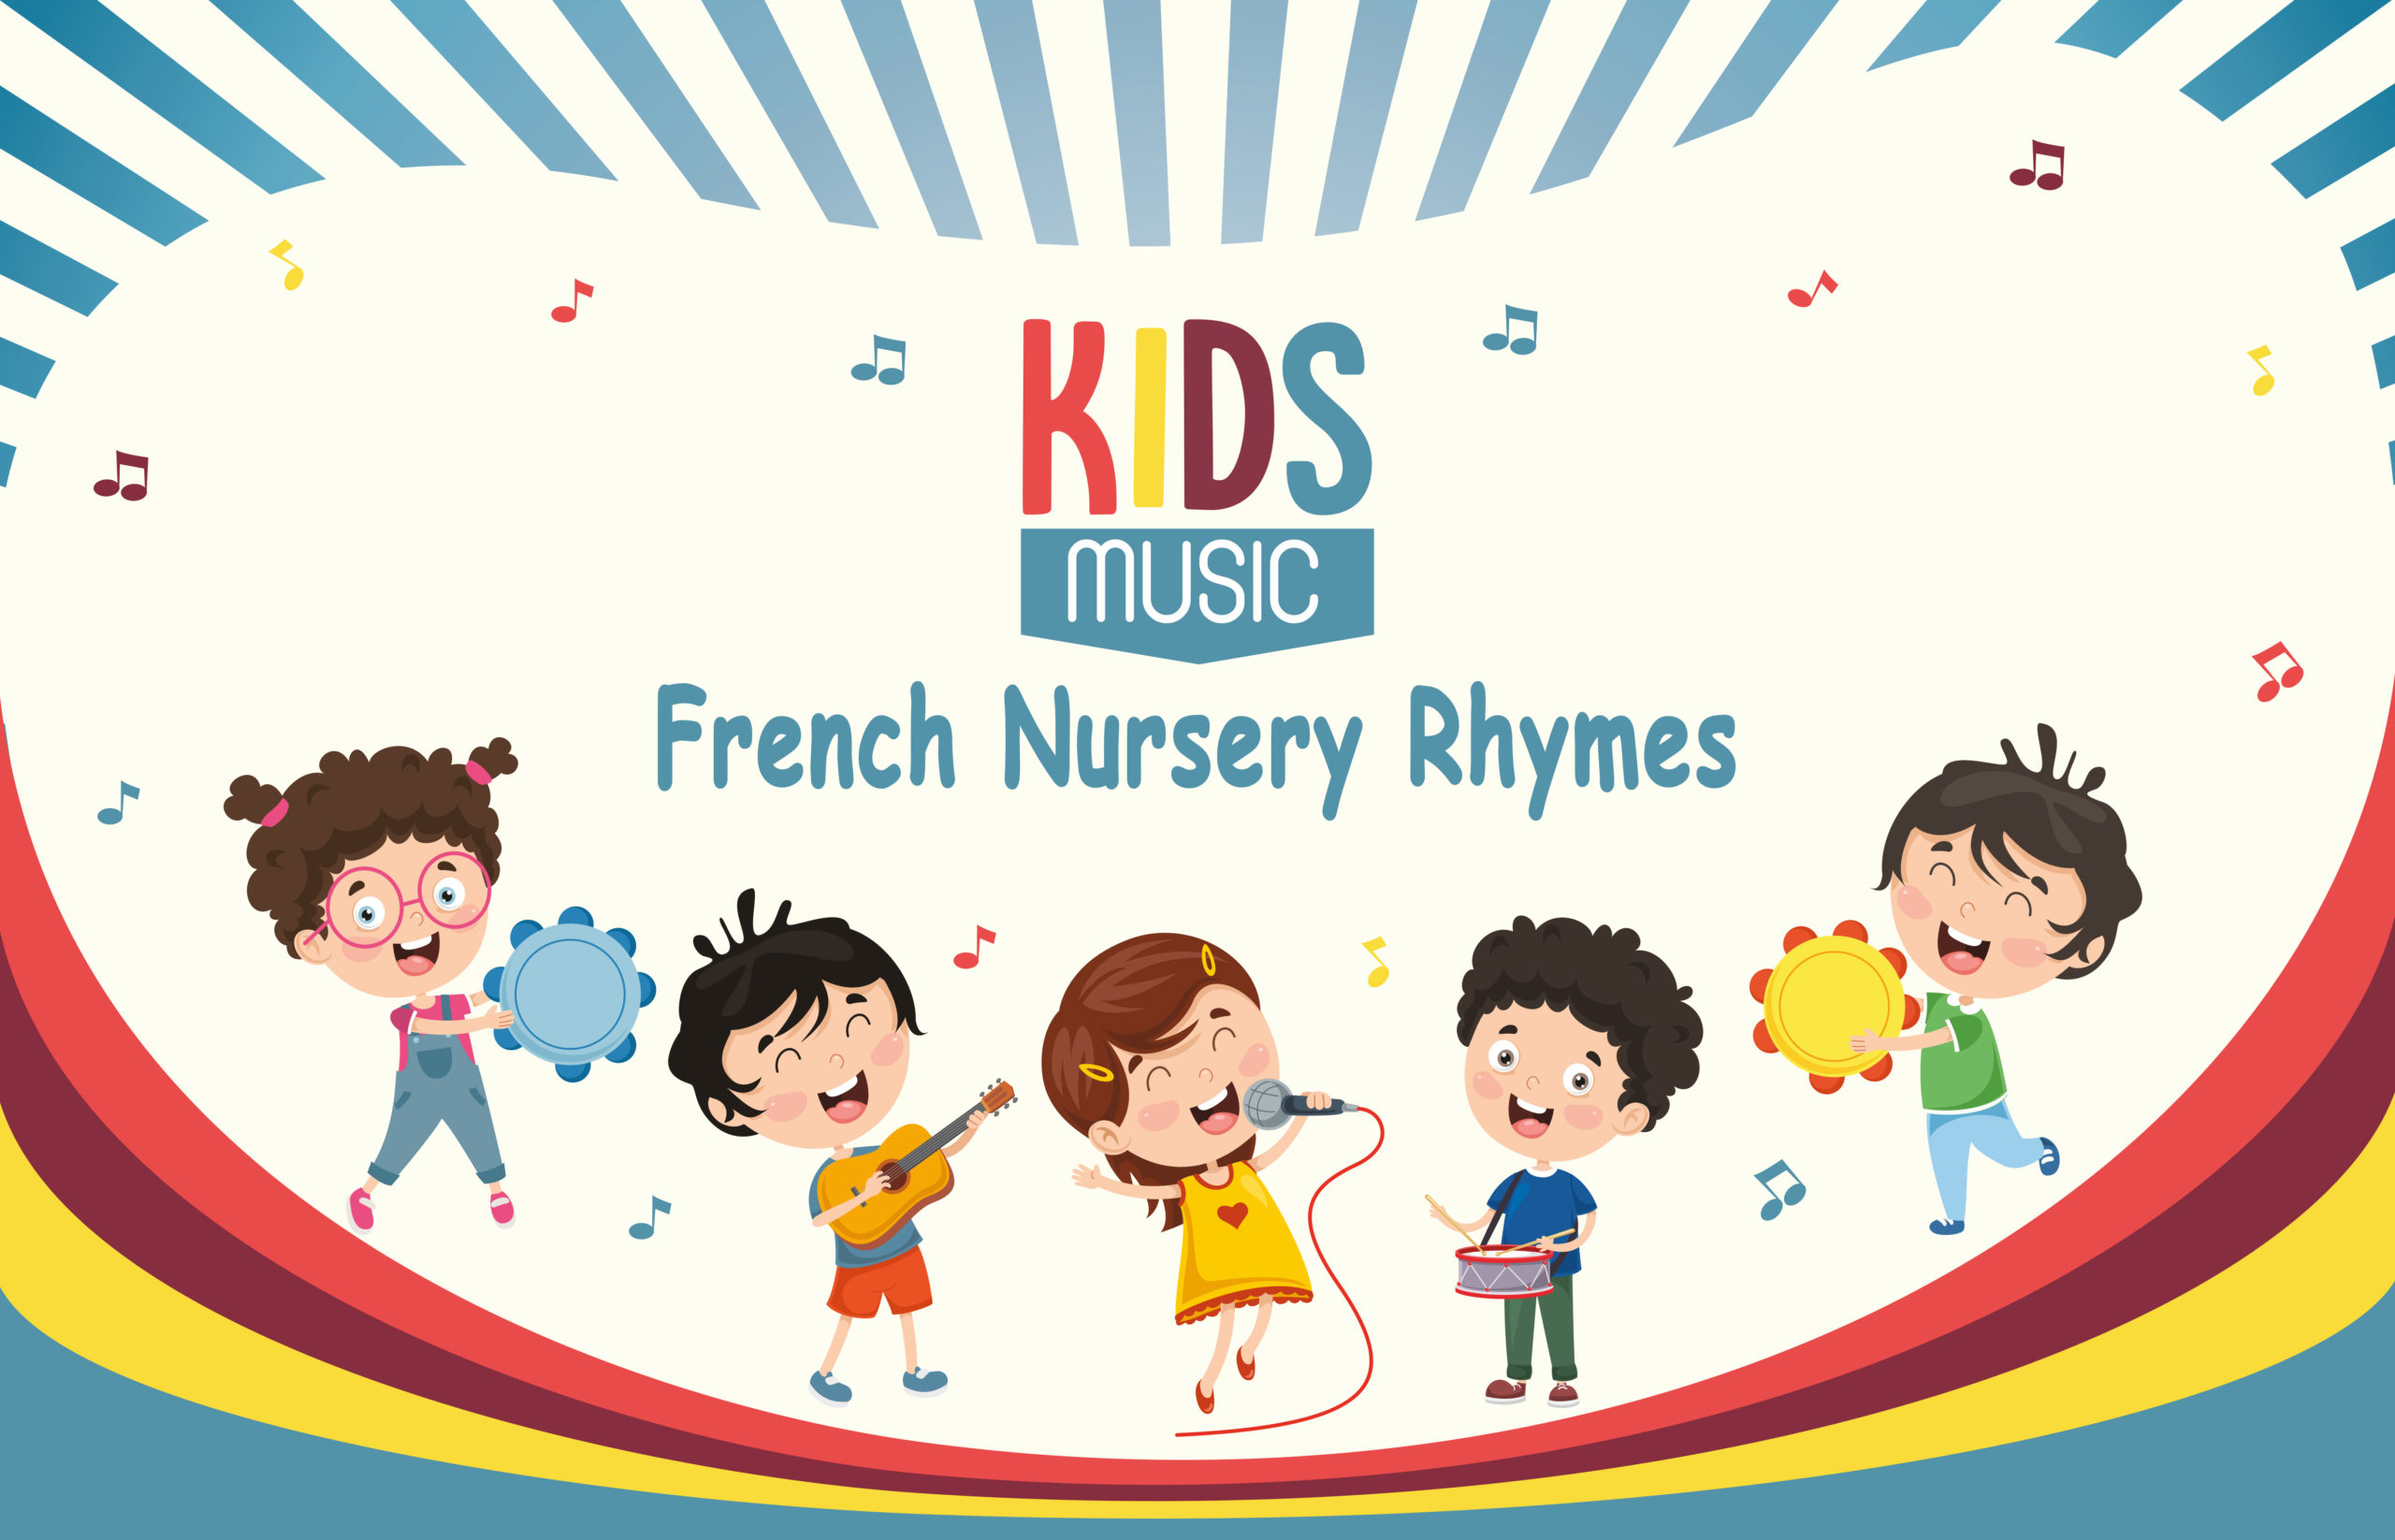 French Nursery Rhymes